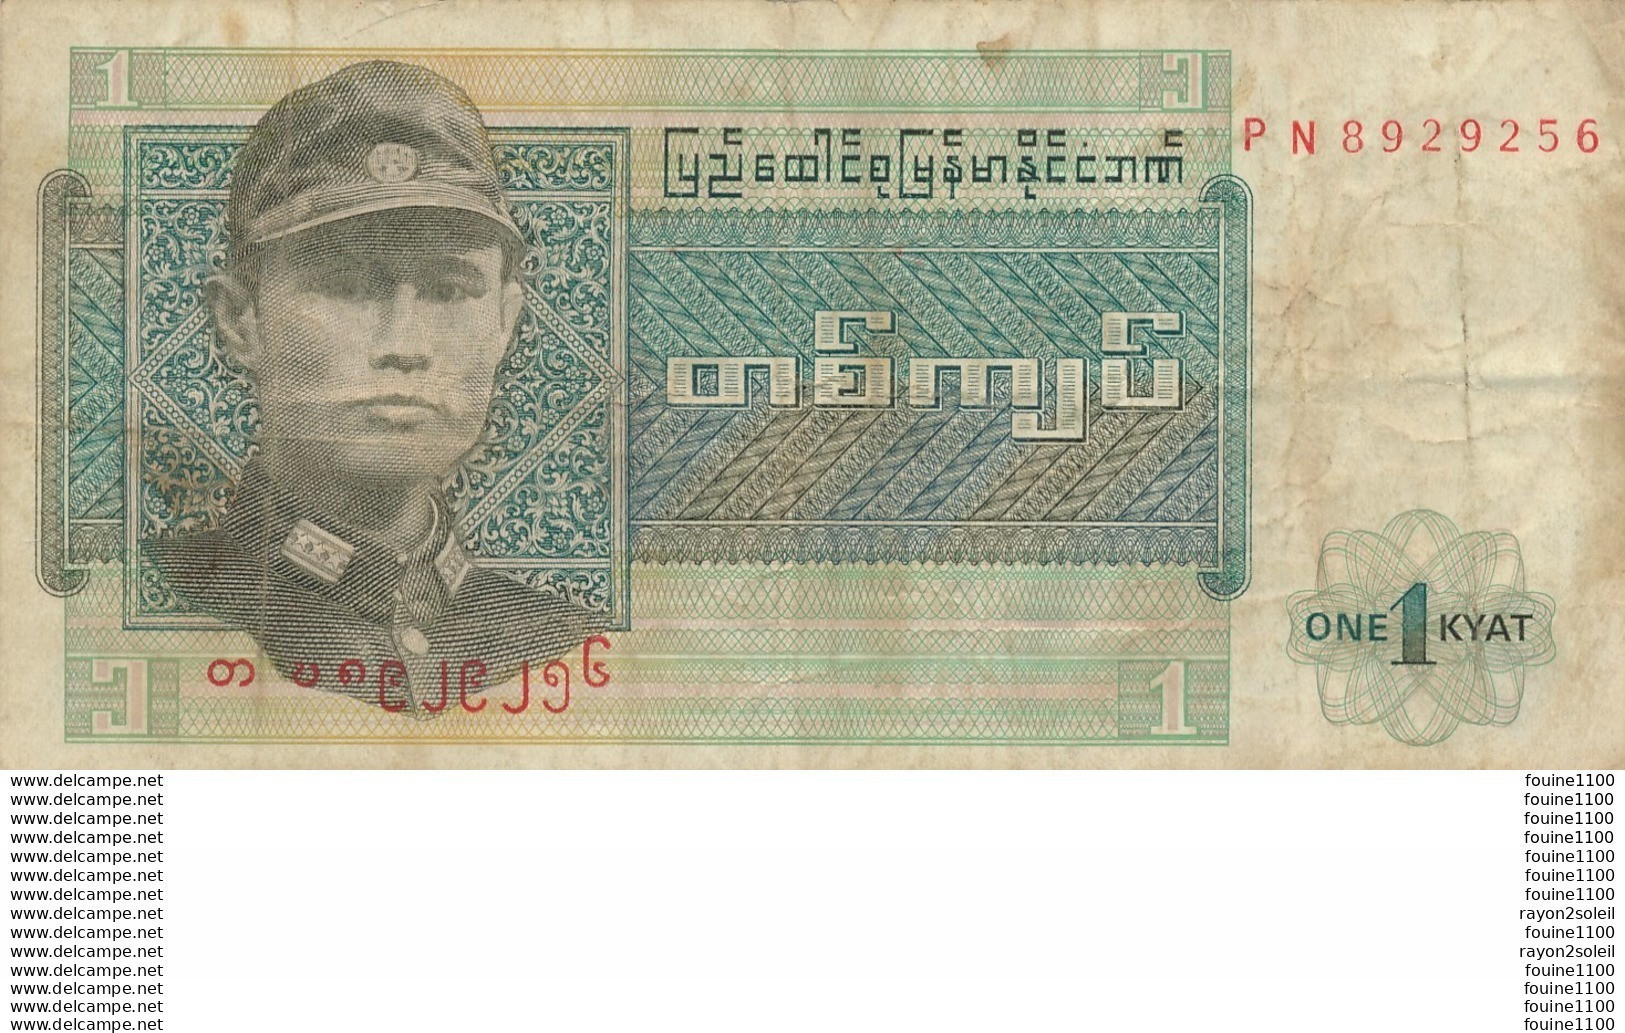 Billet De Banque Myanmar 1 Kyat - Myanmar